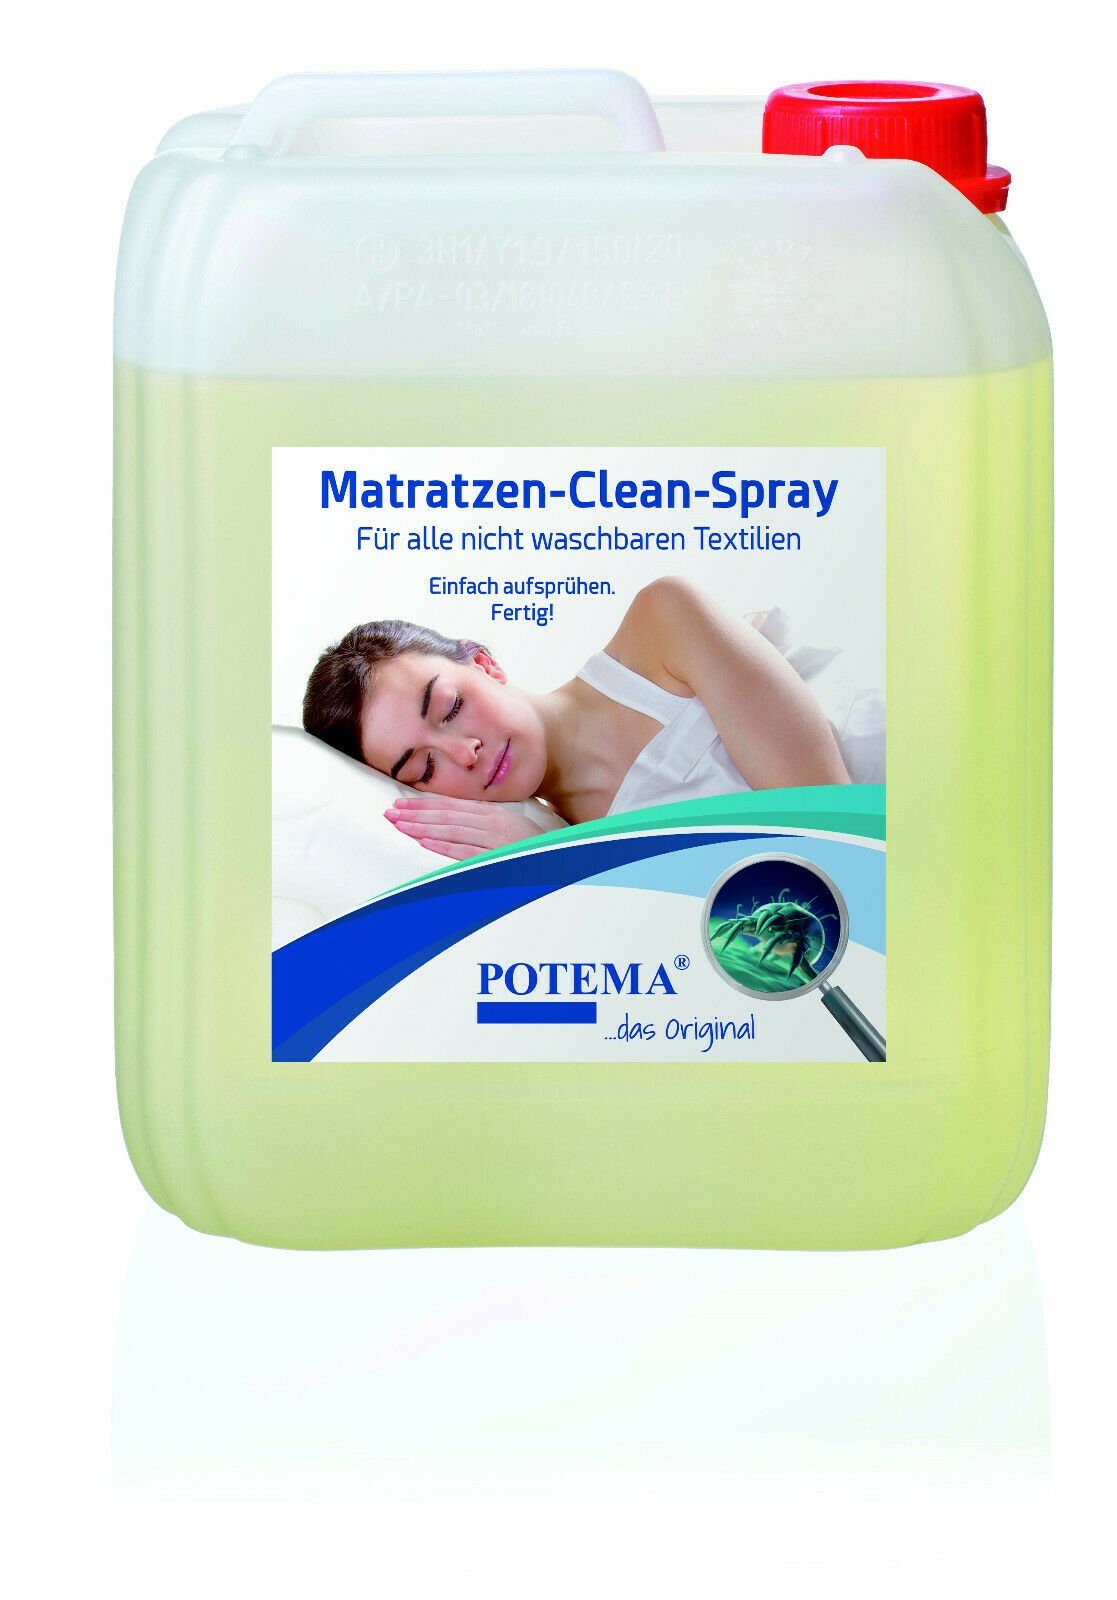 Liter Kanister Matratzenclean Matratzenreinigungsgerät 5 Potema Spray